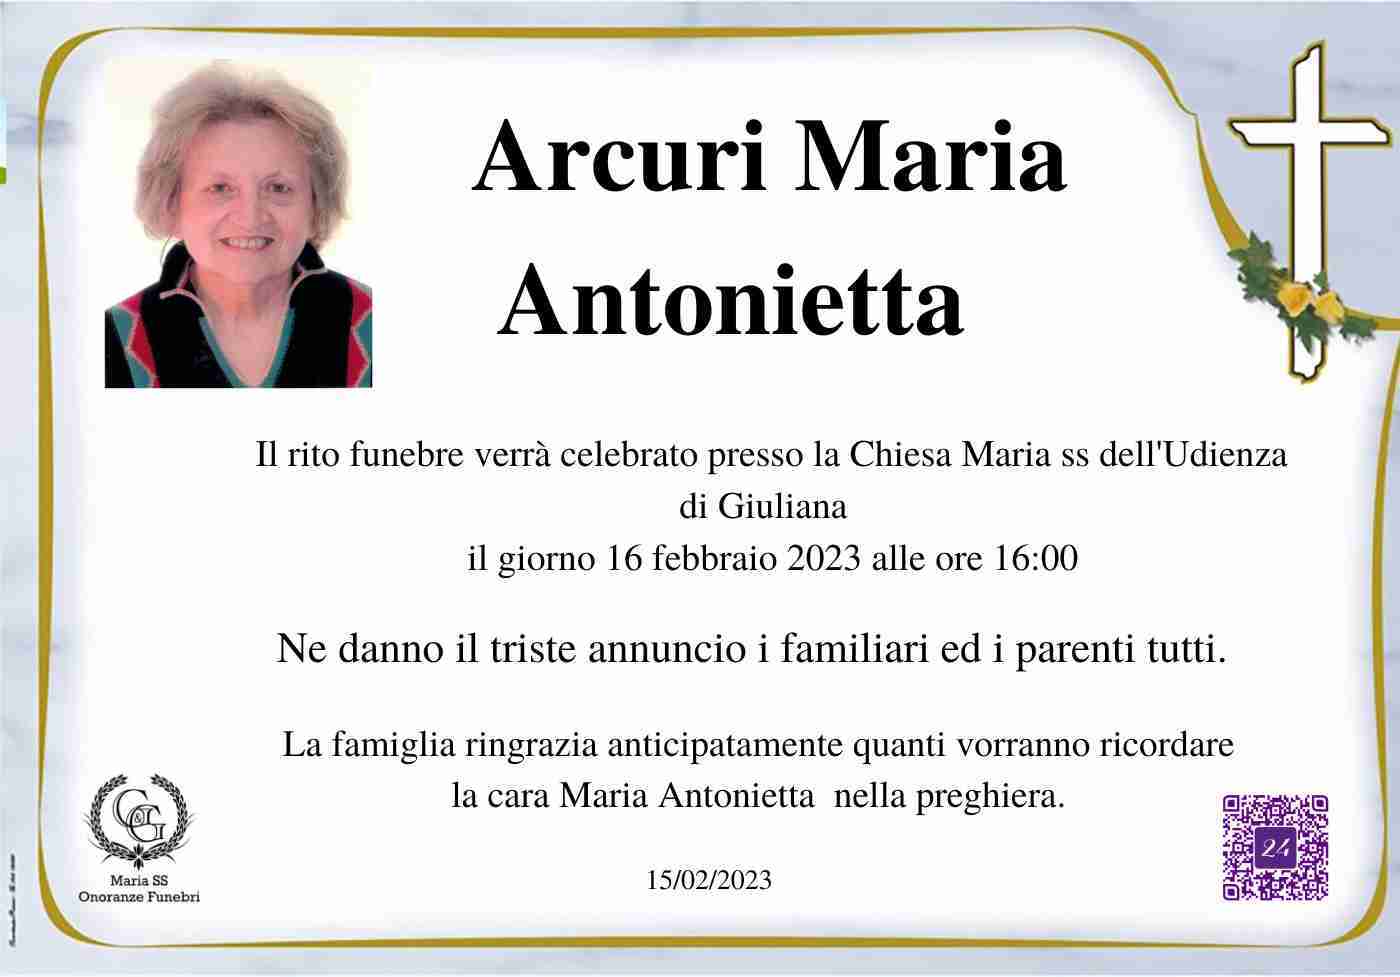 Maria Antonietta Arcuri